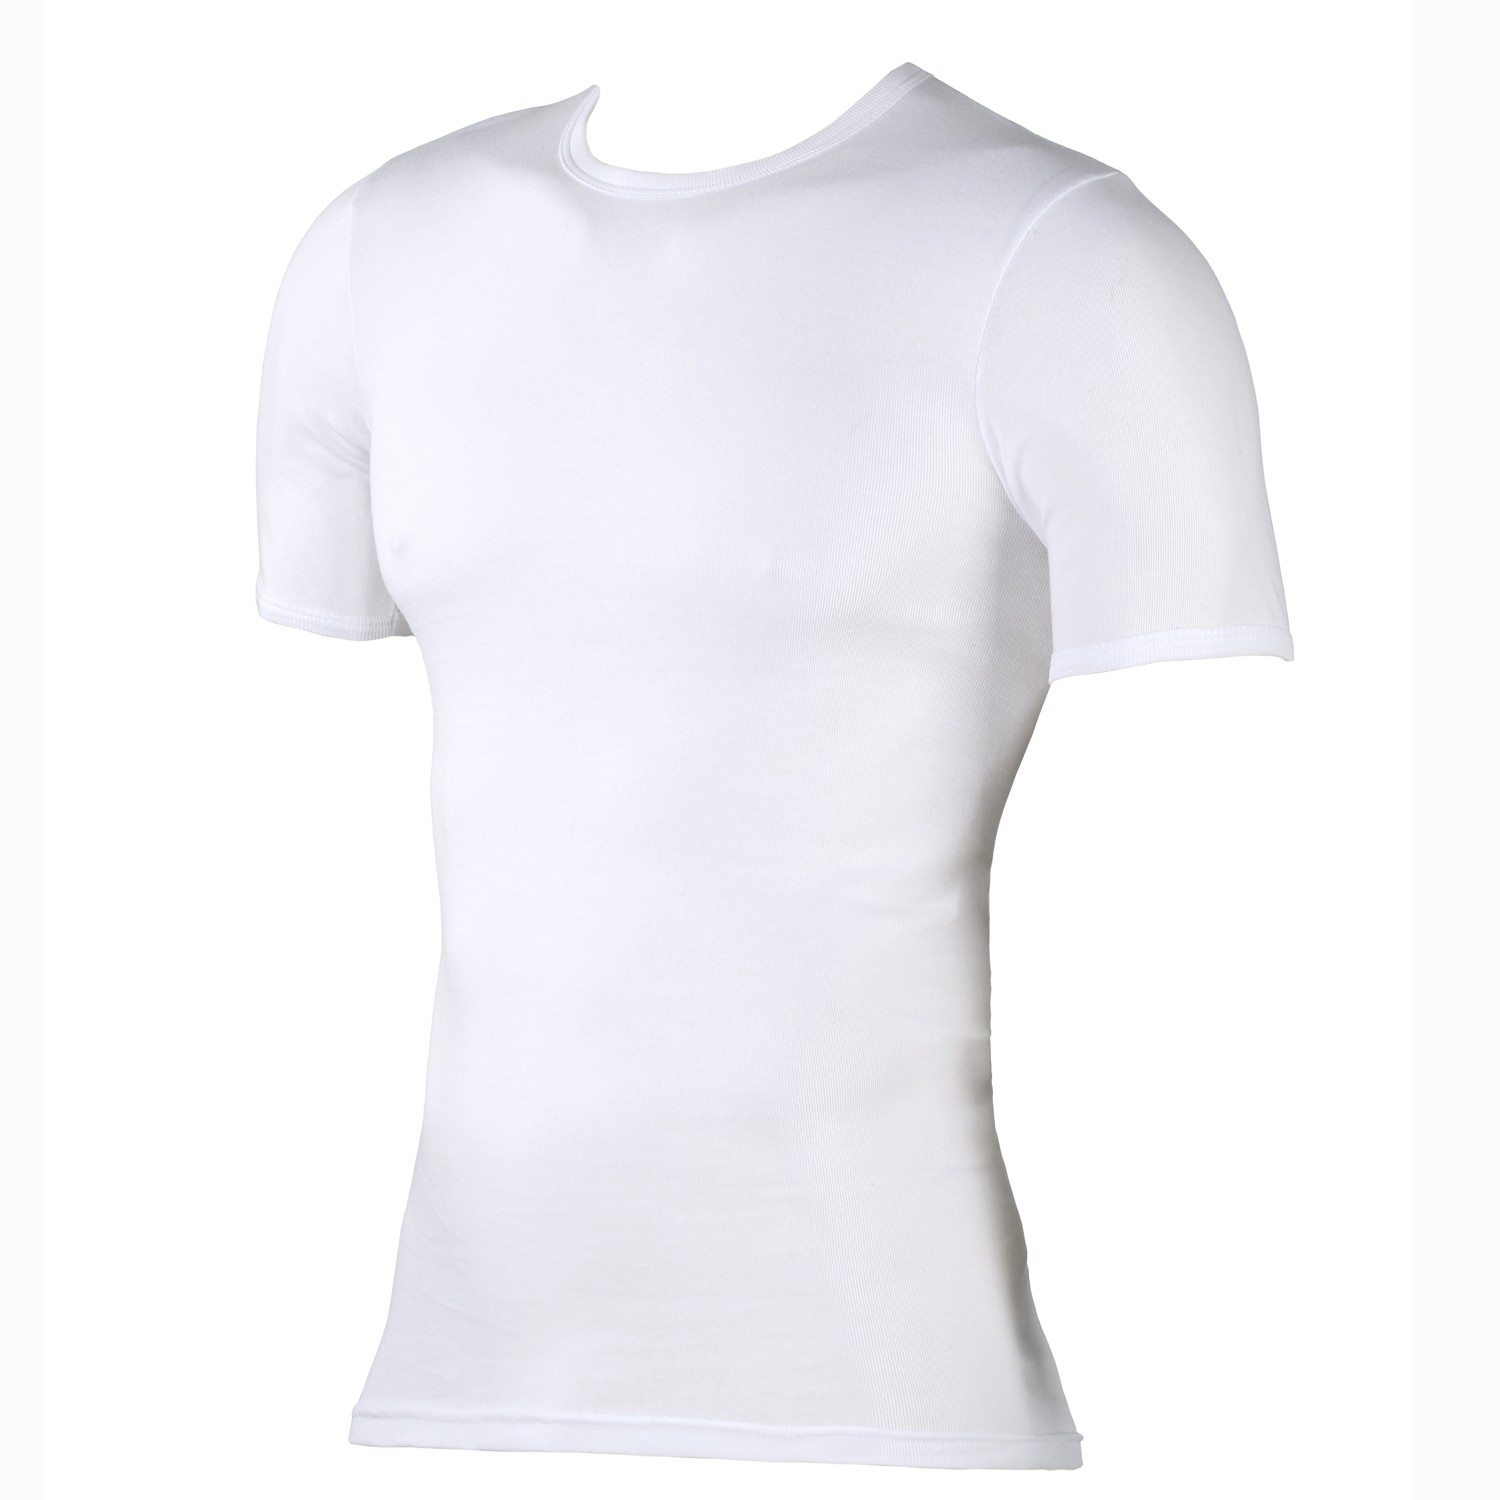 T-shirt blanc - côte fine - Kapart // grandes tailles jusqu'à 20